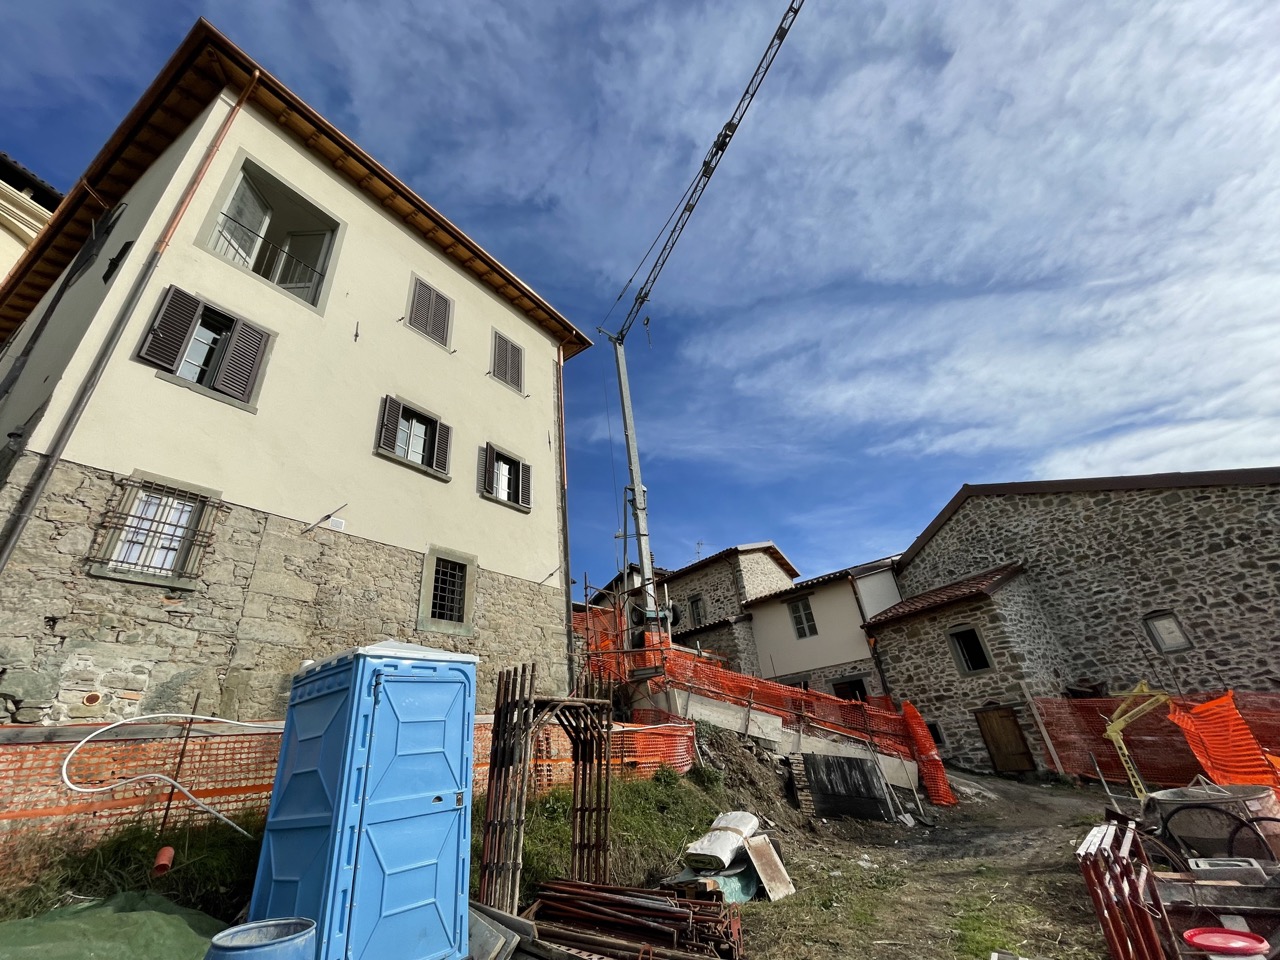 Dall’associazionismo all’housing sociale, gli edifici abbandonati riprendono vita: le storie in Garfagnana e Lunigiana